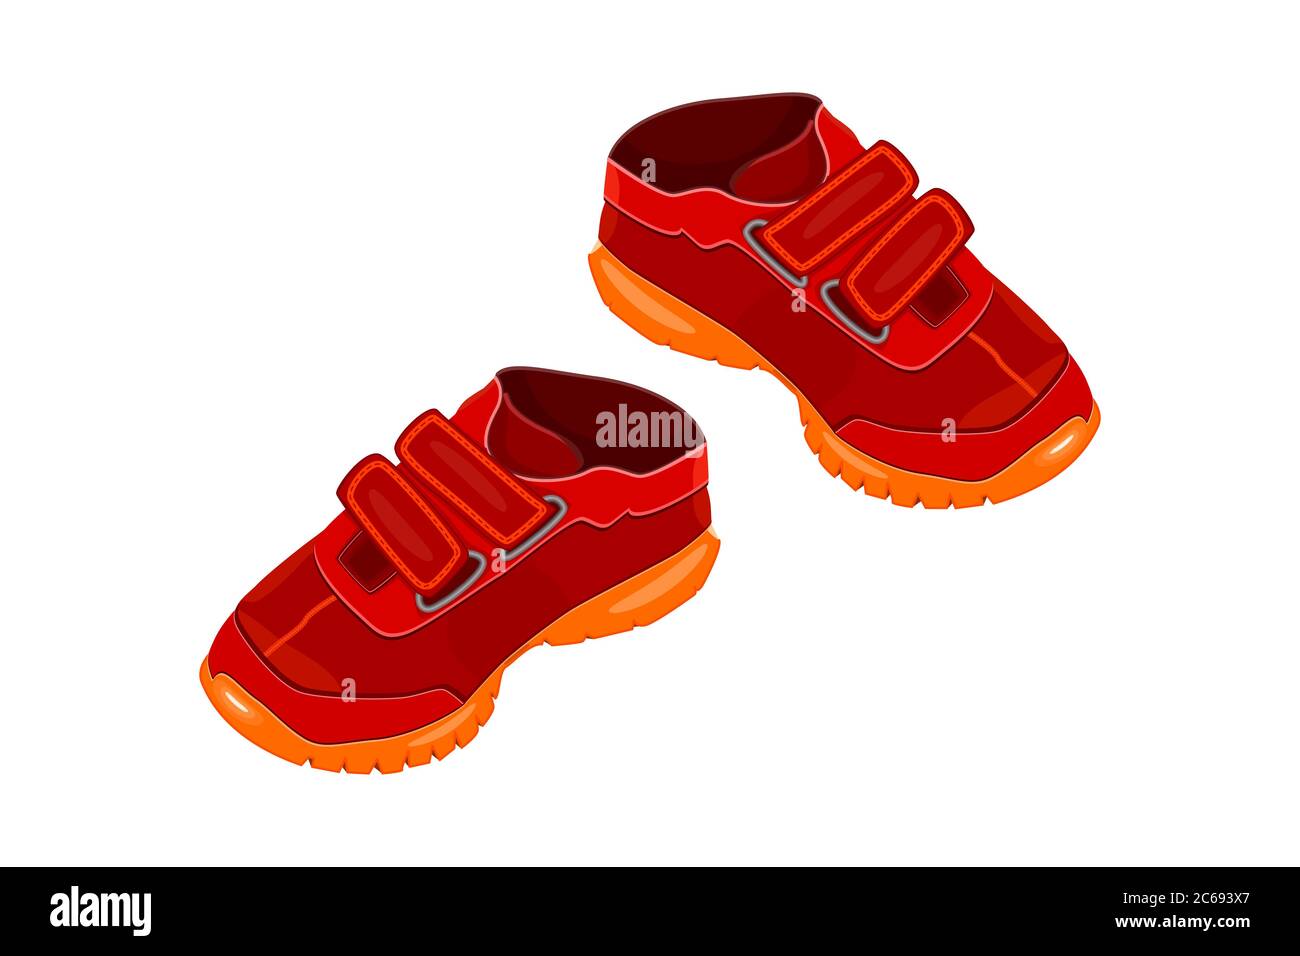 Paar rote Schuhe isoliert auf weißem Hintergrund. Zwei Kinder oder junge  adul rote Turnschuhe mit Klettverschluss und oranger Sohle. Sportschuhe.  Logo oder Symbol des Kindes Stock-Vektorgrafik - Alamy